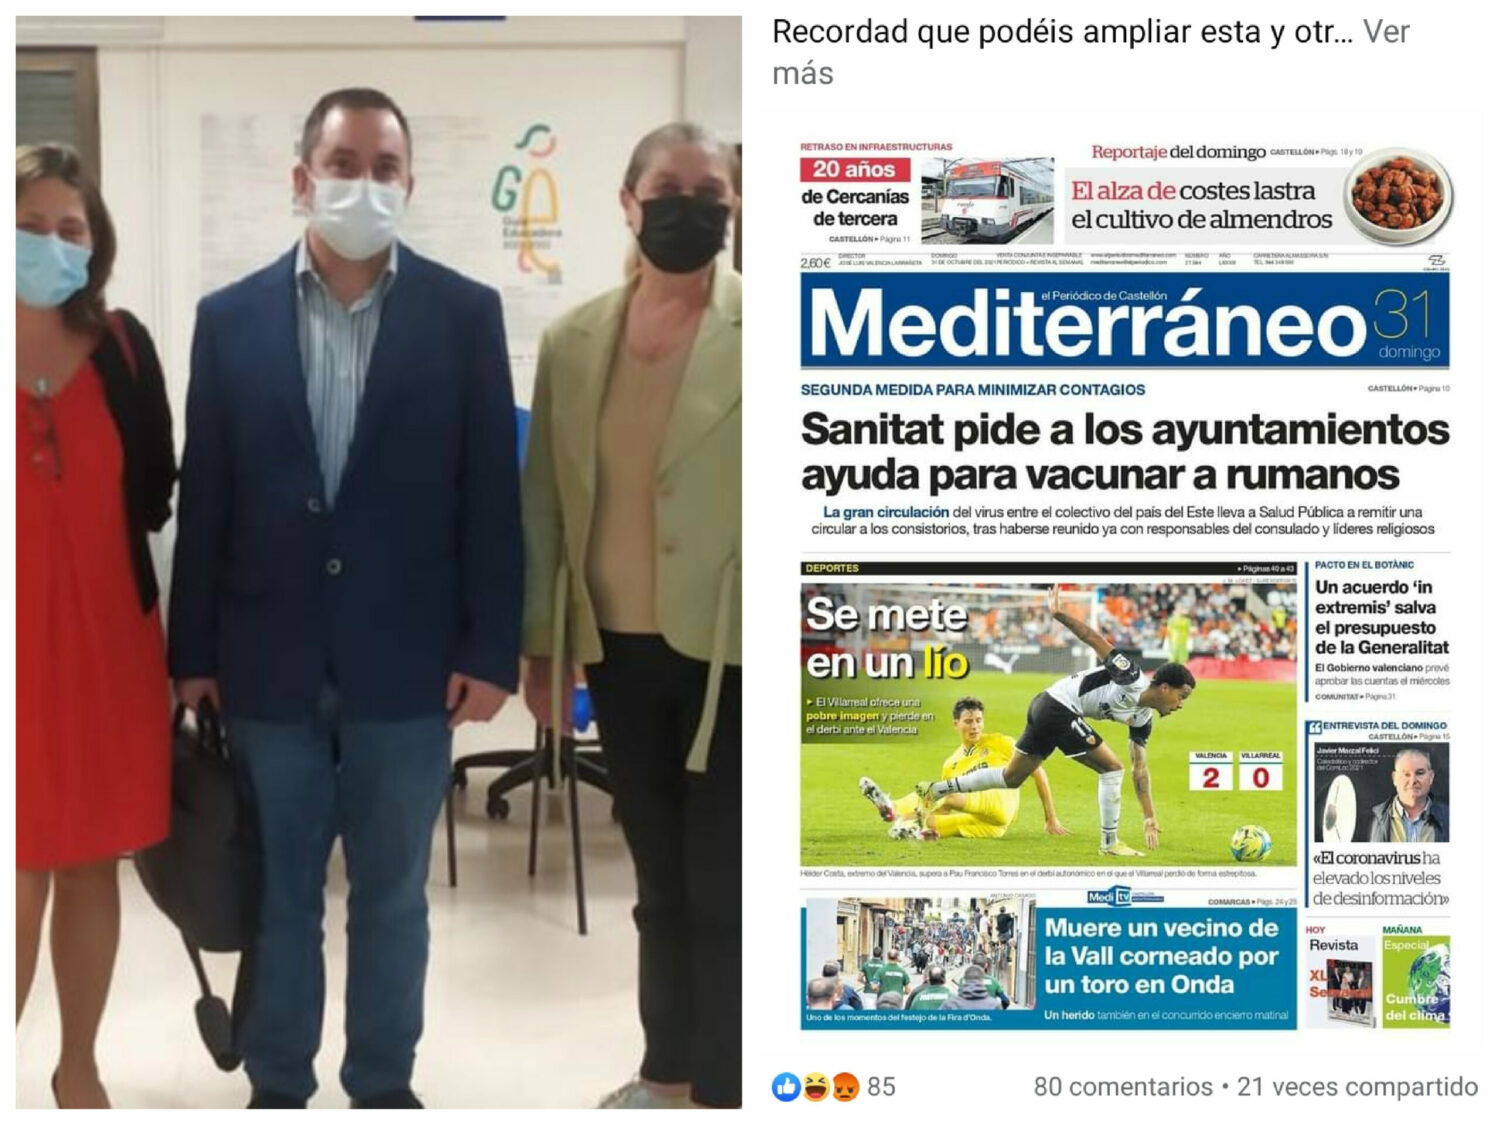 Românii antivacciniști au umplut spitalul din Castellon. Spania cere ajutor României pentru a-i convinge să se vaccineze